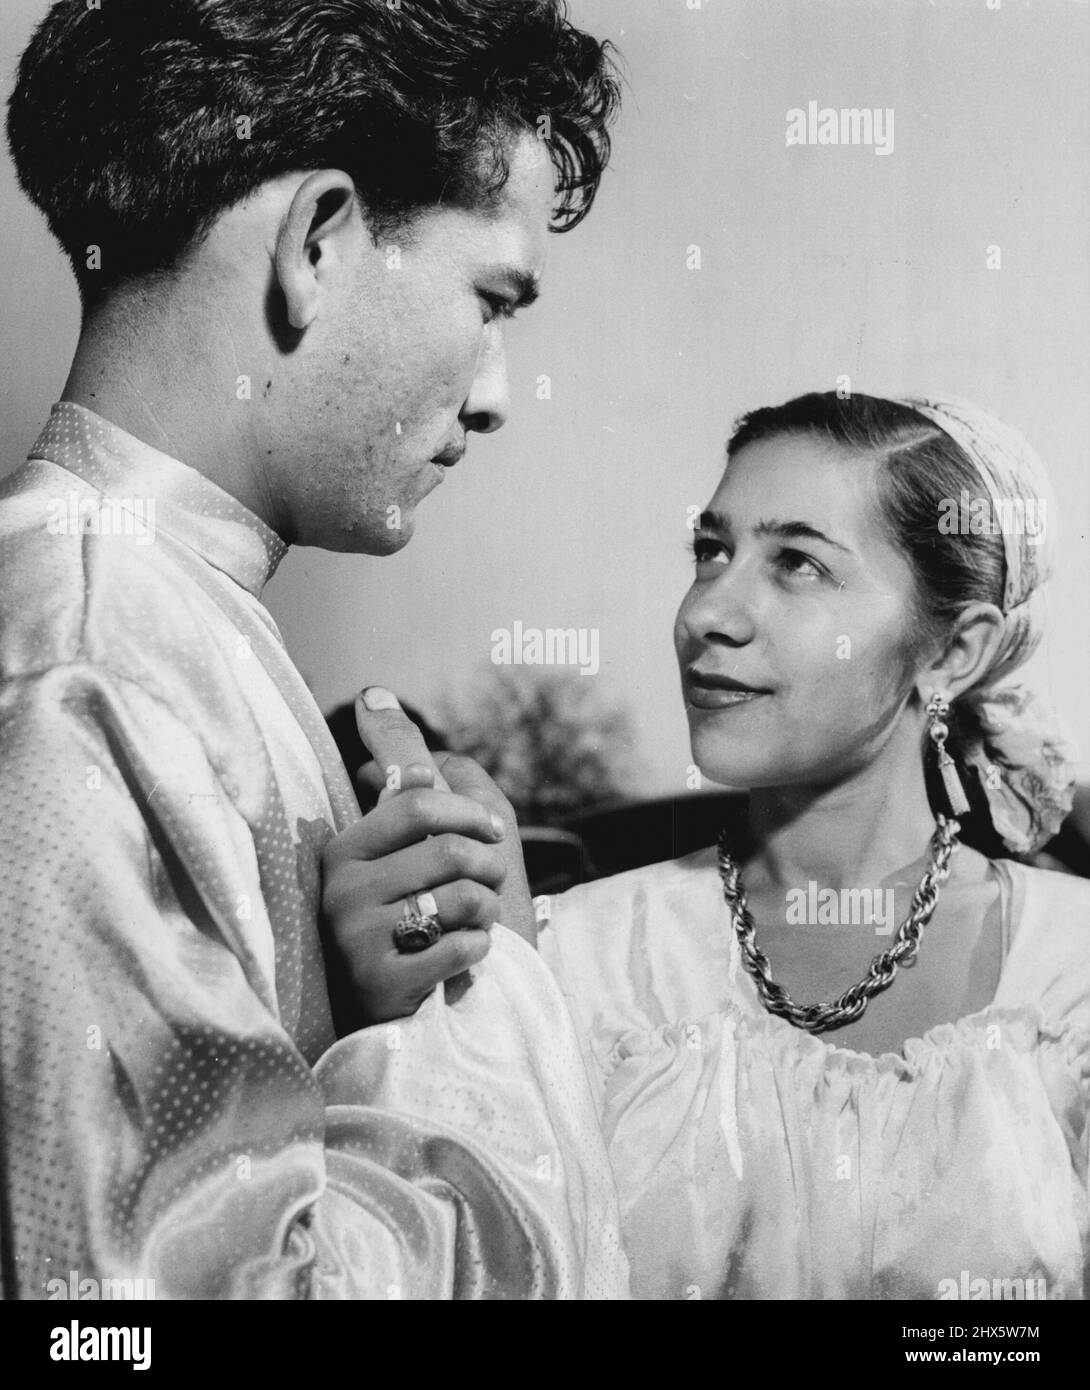 Romance - divers. 27 novembre 1953. (Photo de United Press photo). Banque D'Images